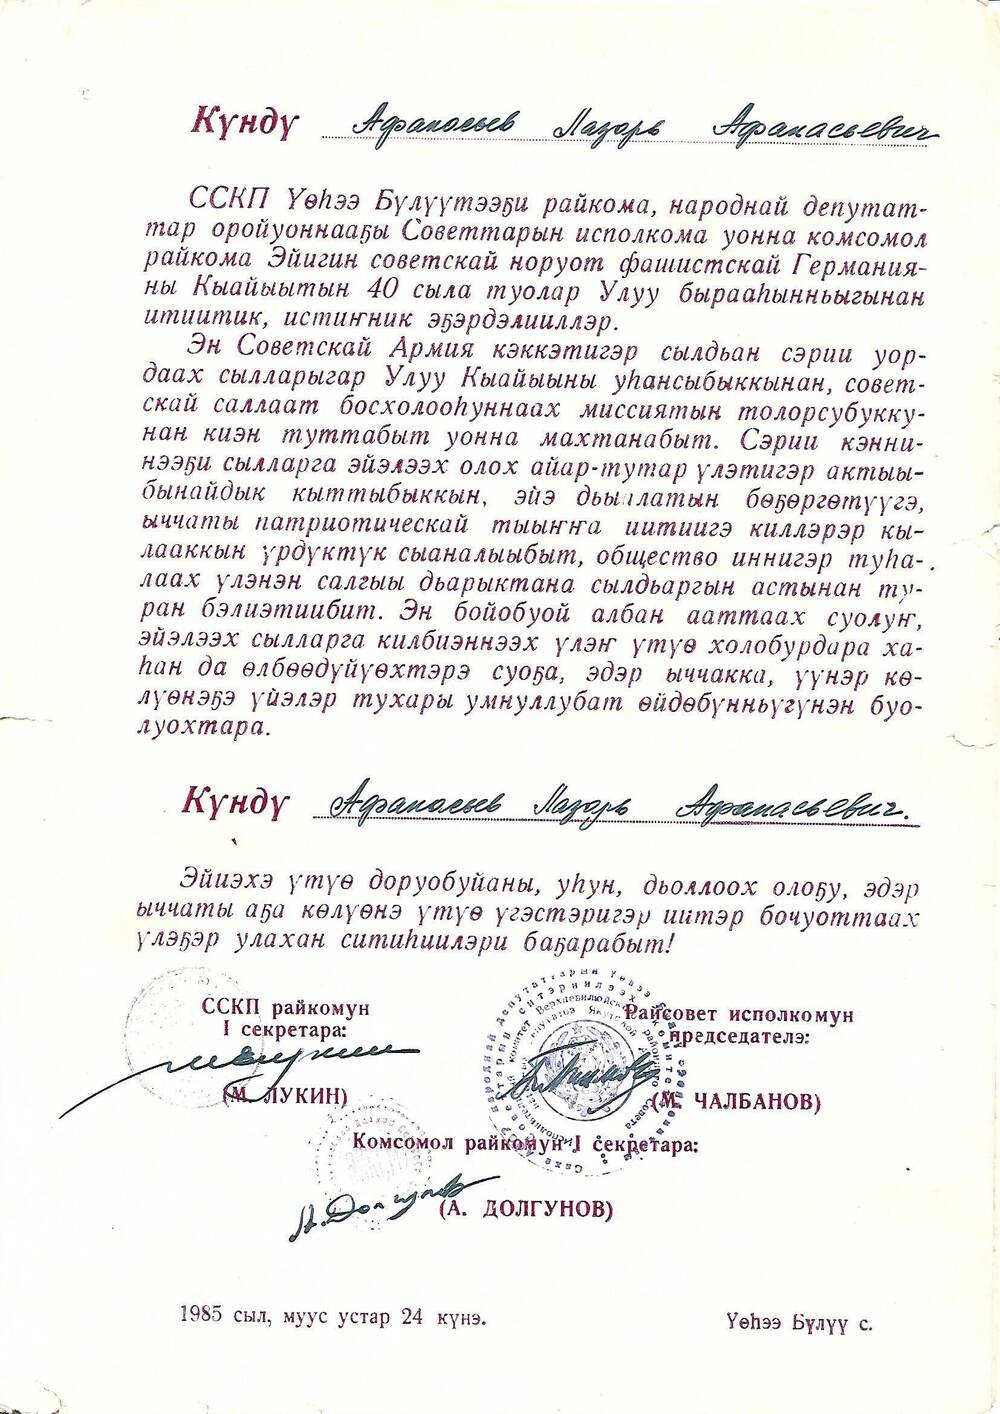 Поздравление от 24.03.1985г.Афанасьев Лазарь Афанасьевич